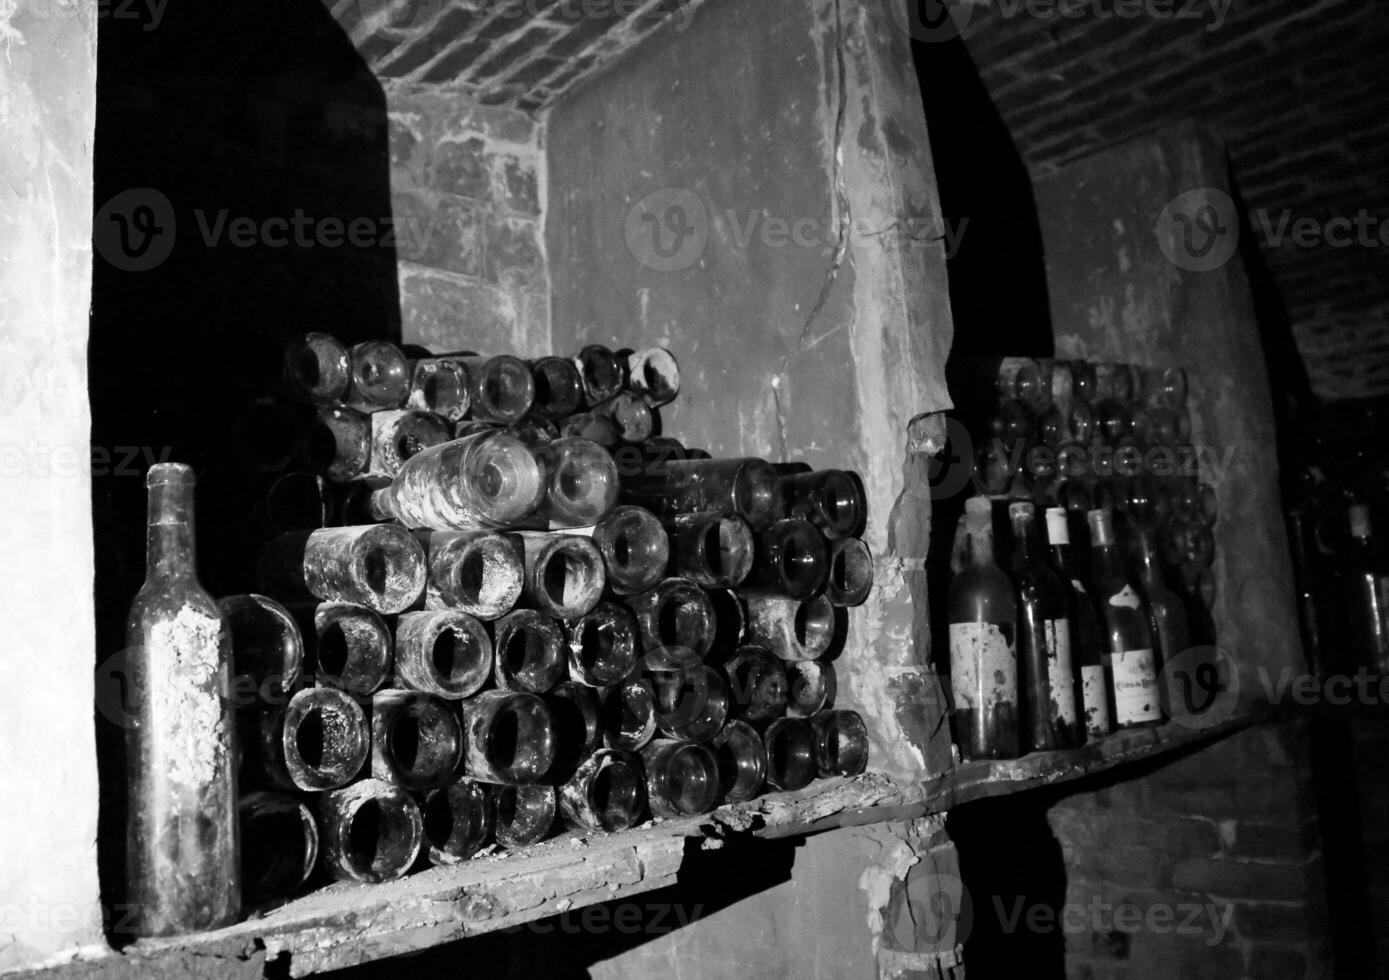 des bouteilles de vin très anciennes se trouvent dans une cave sombre rétro photo